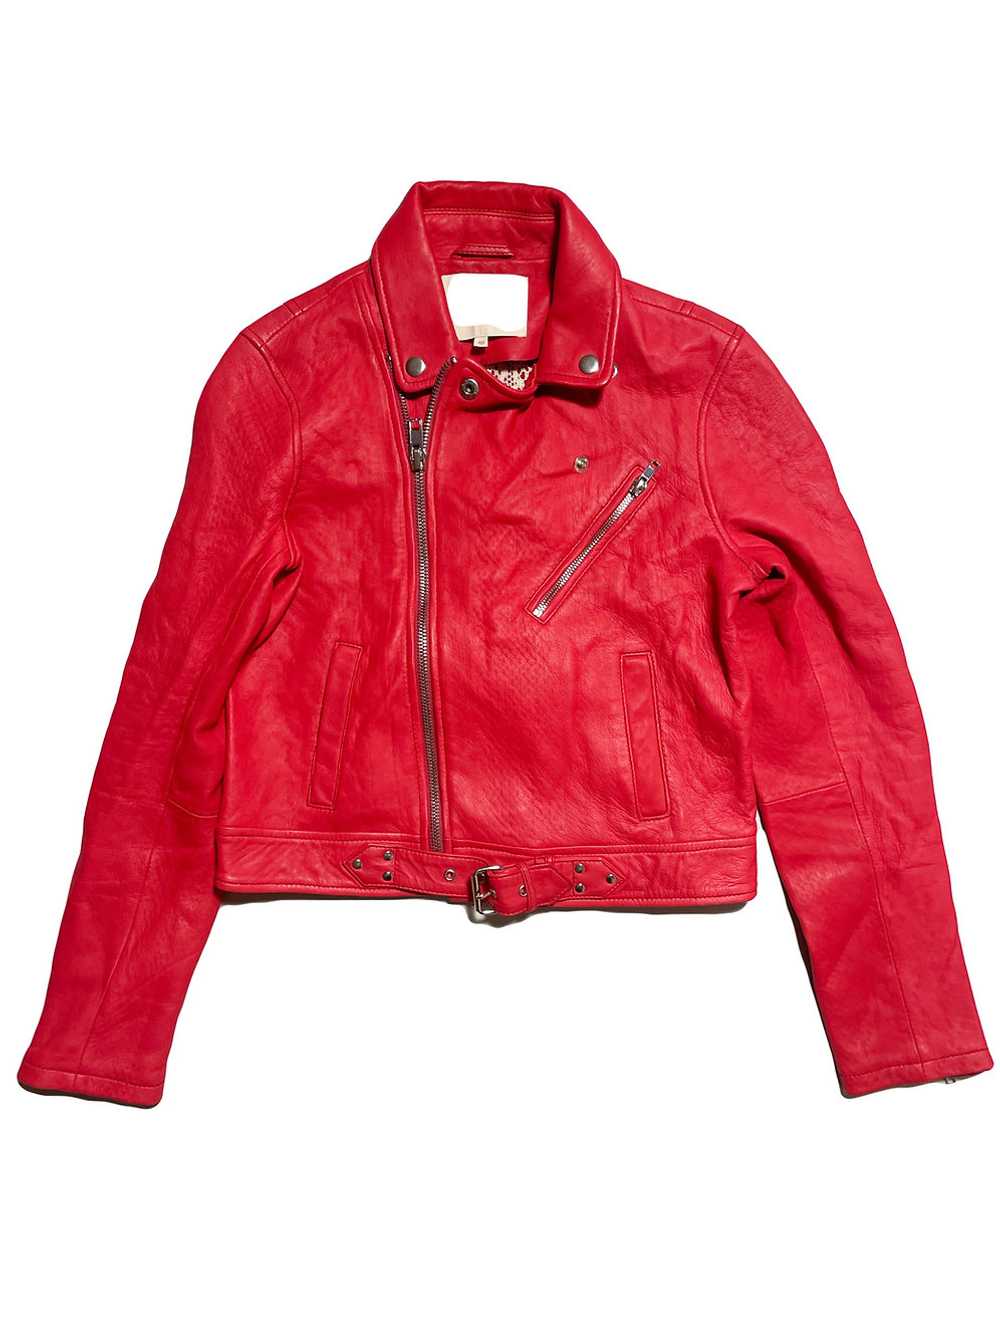 Maje Bright Red Leather Jacket UK 12 - image 1